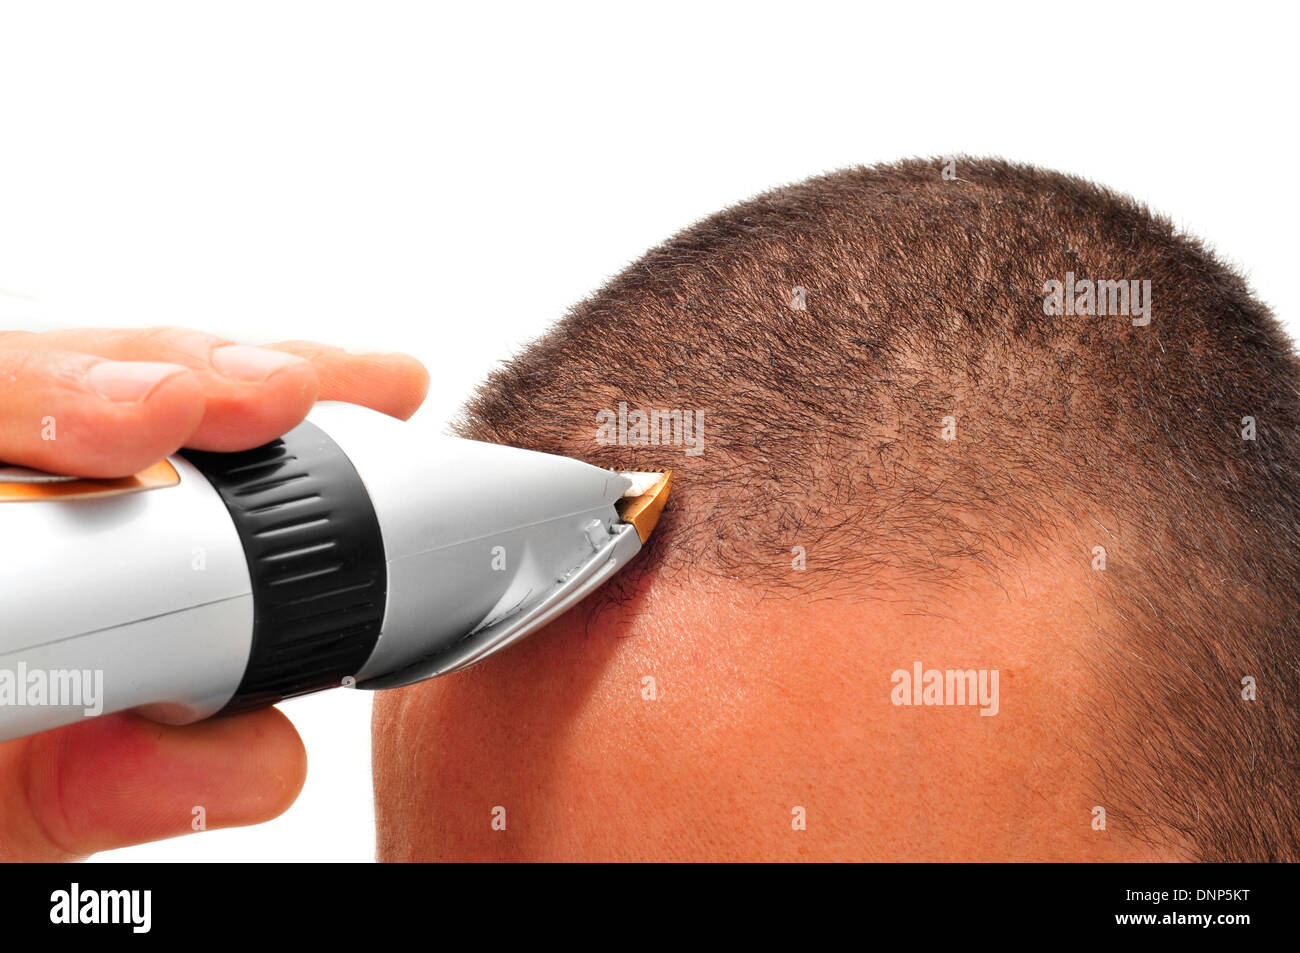 ein Mann, der seine Haare mit einem elektrischen Haarschneider schneiden  Stockfotografie - Alamy